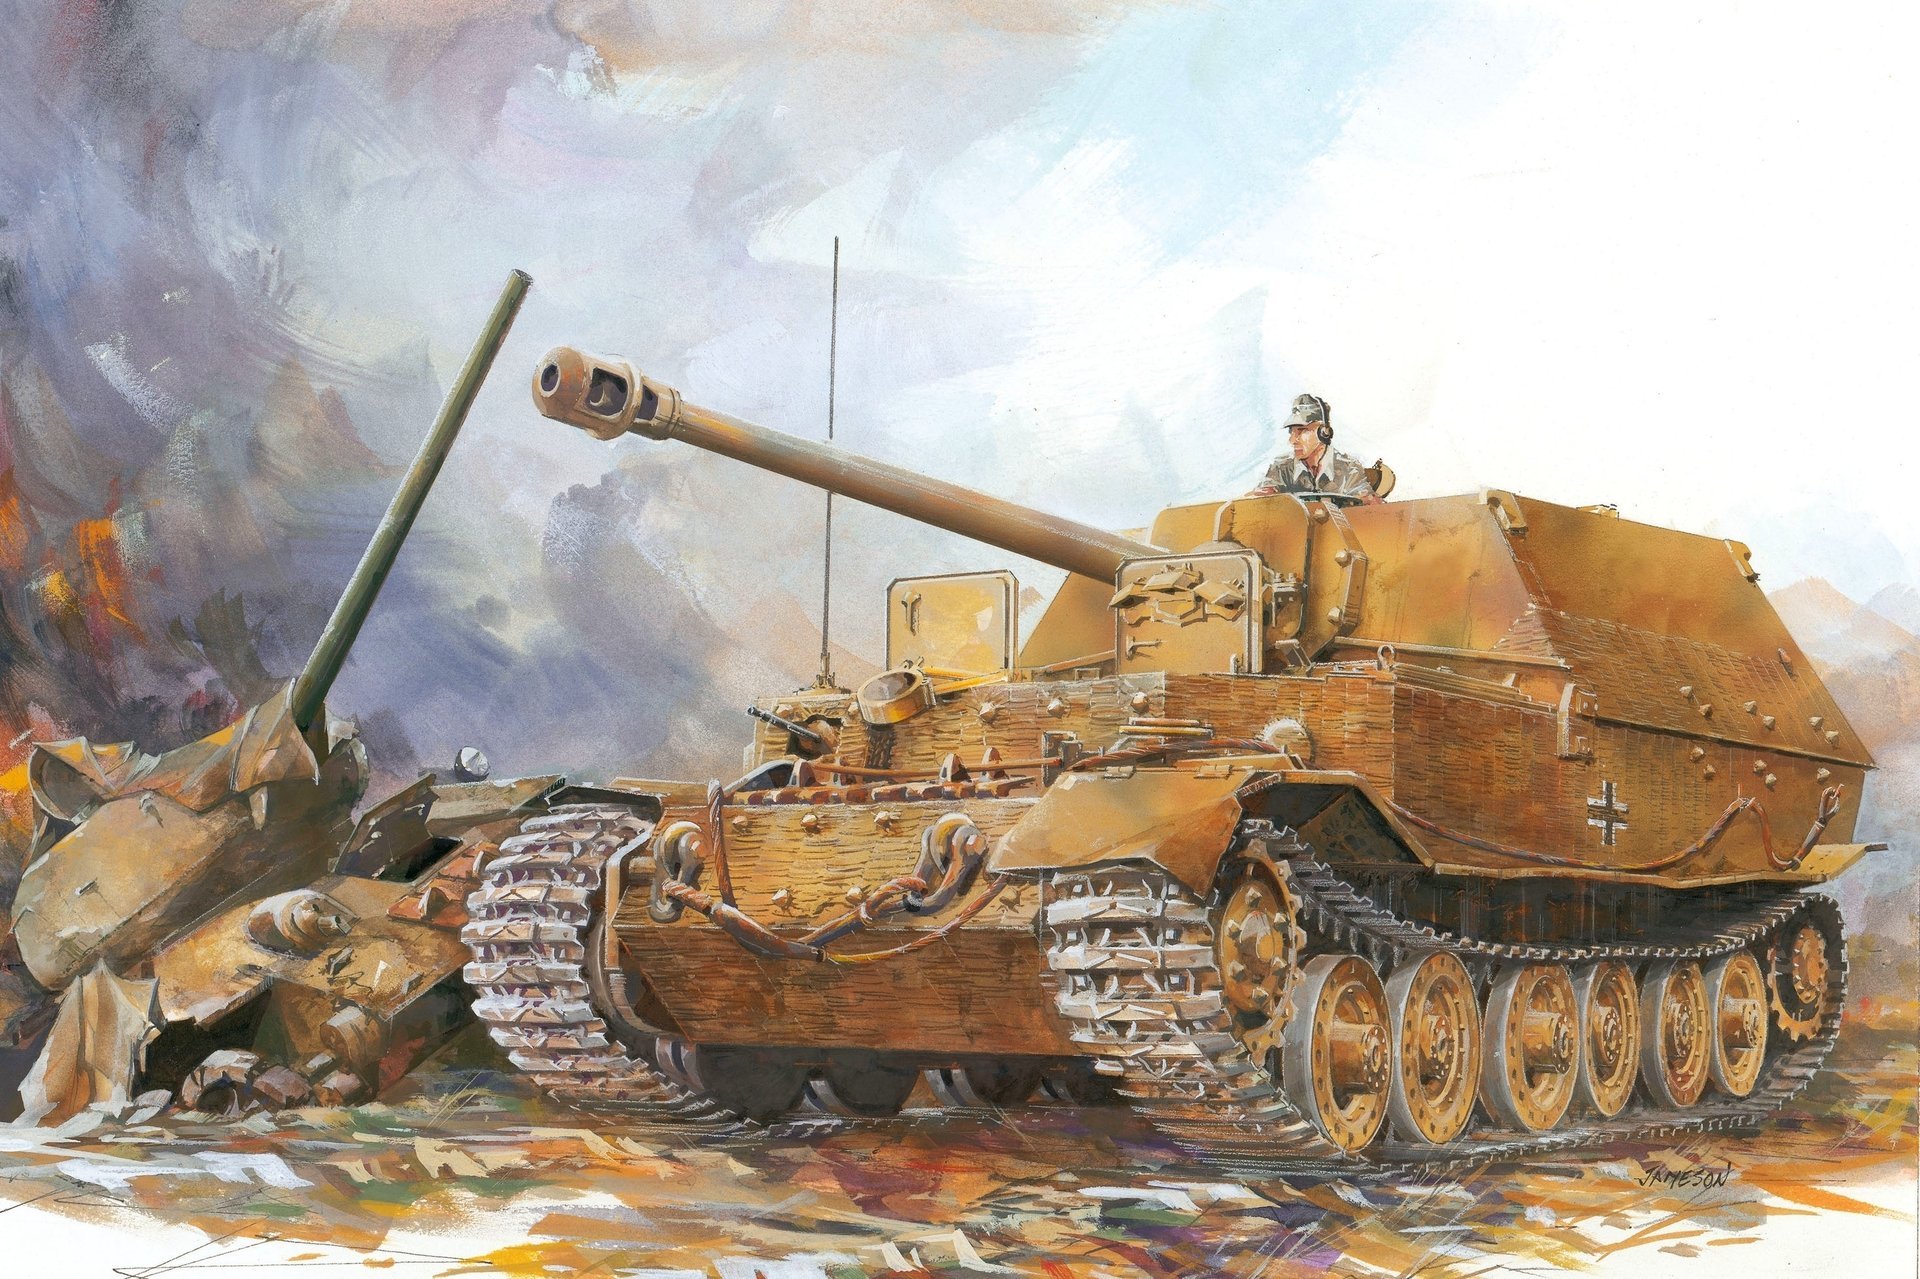 Нарисованная картинка танка с человеком